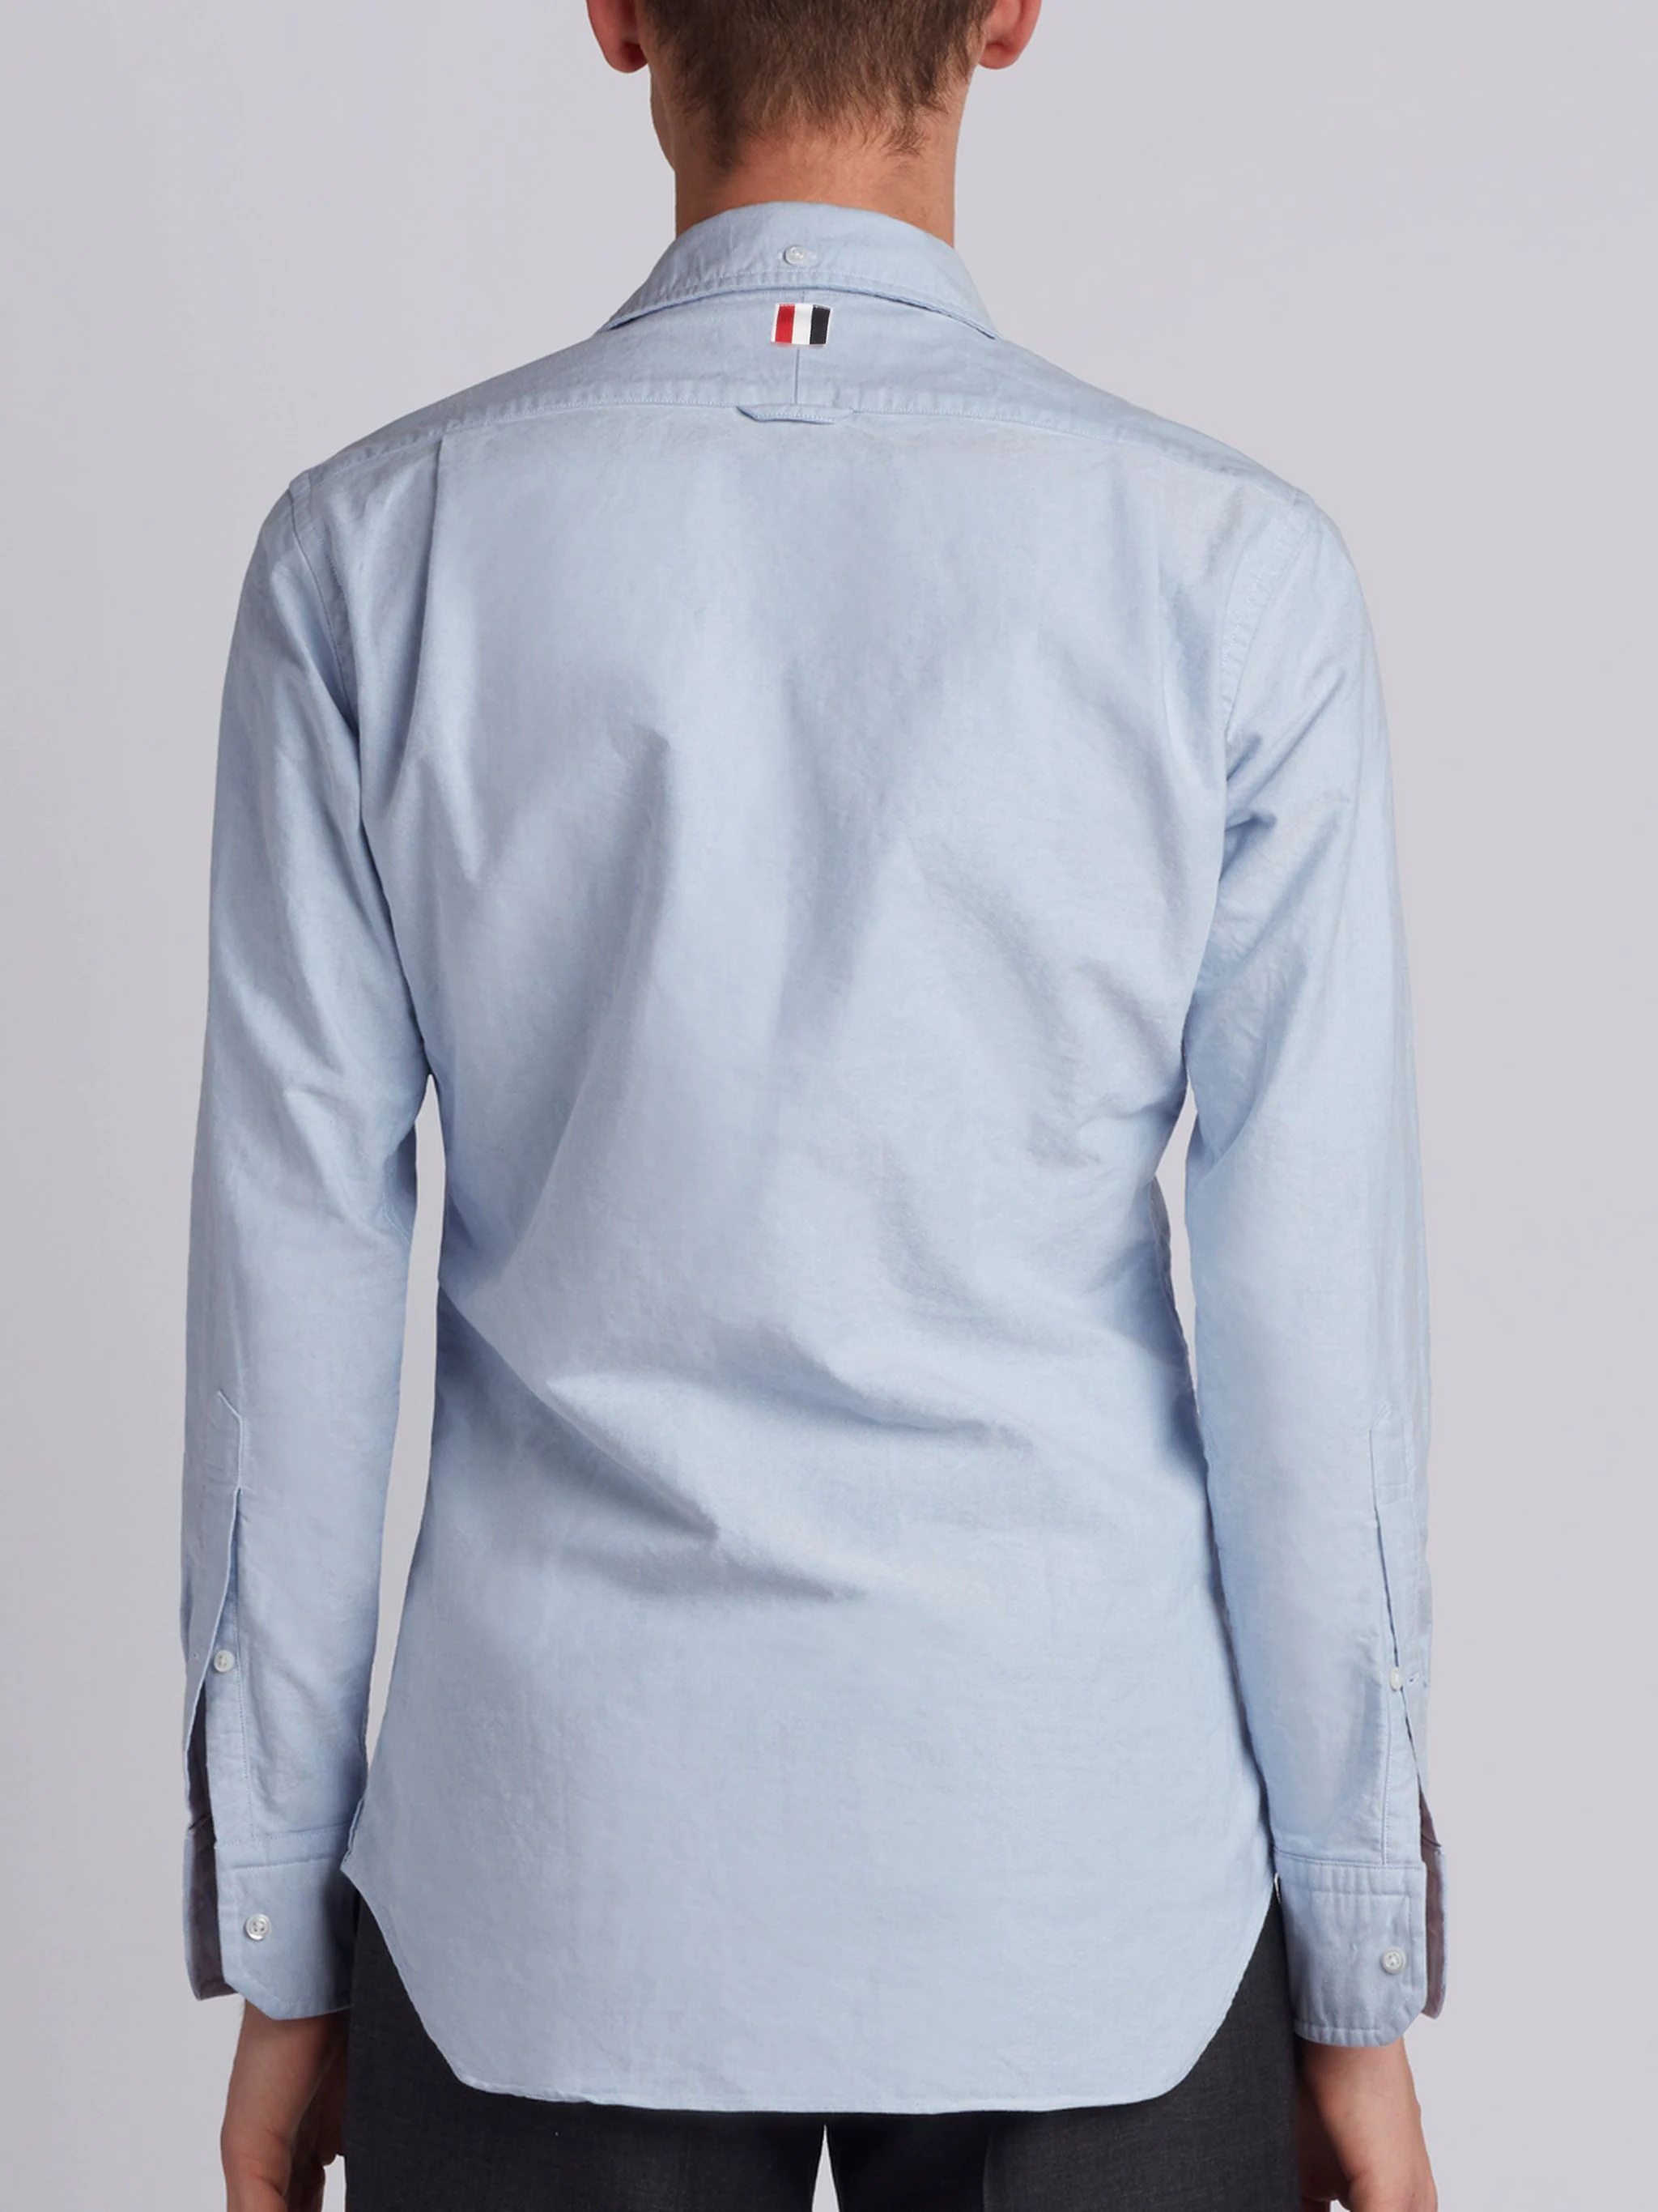 Light Blue Cotton Oxford Grosgrain Placket Shirt - 3